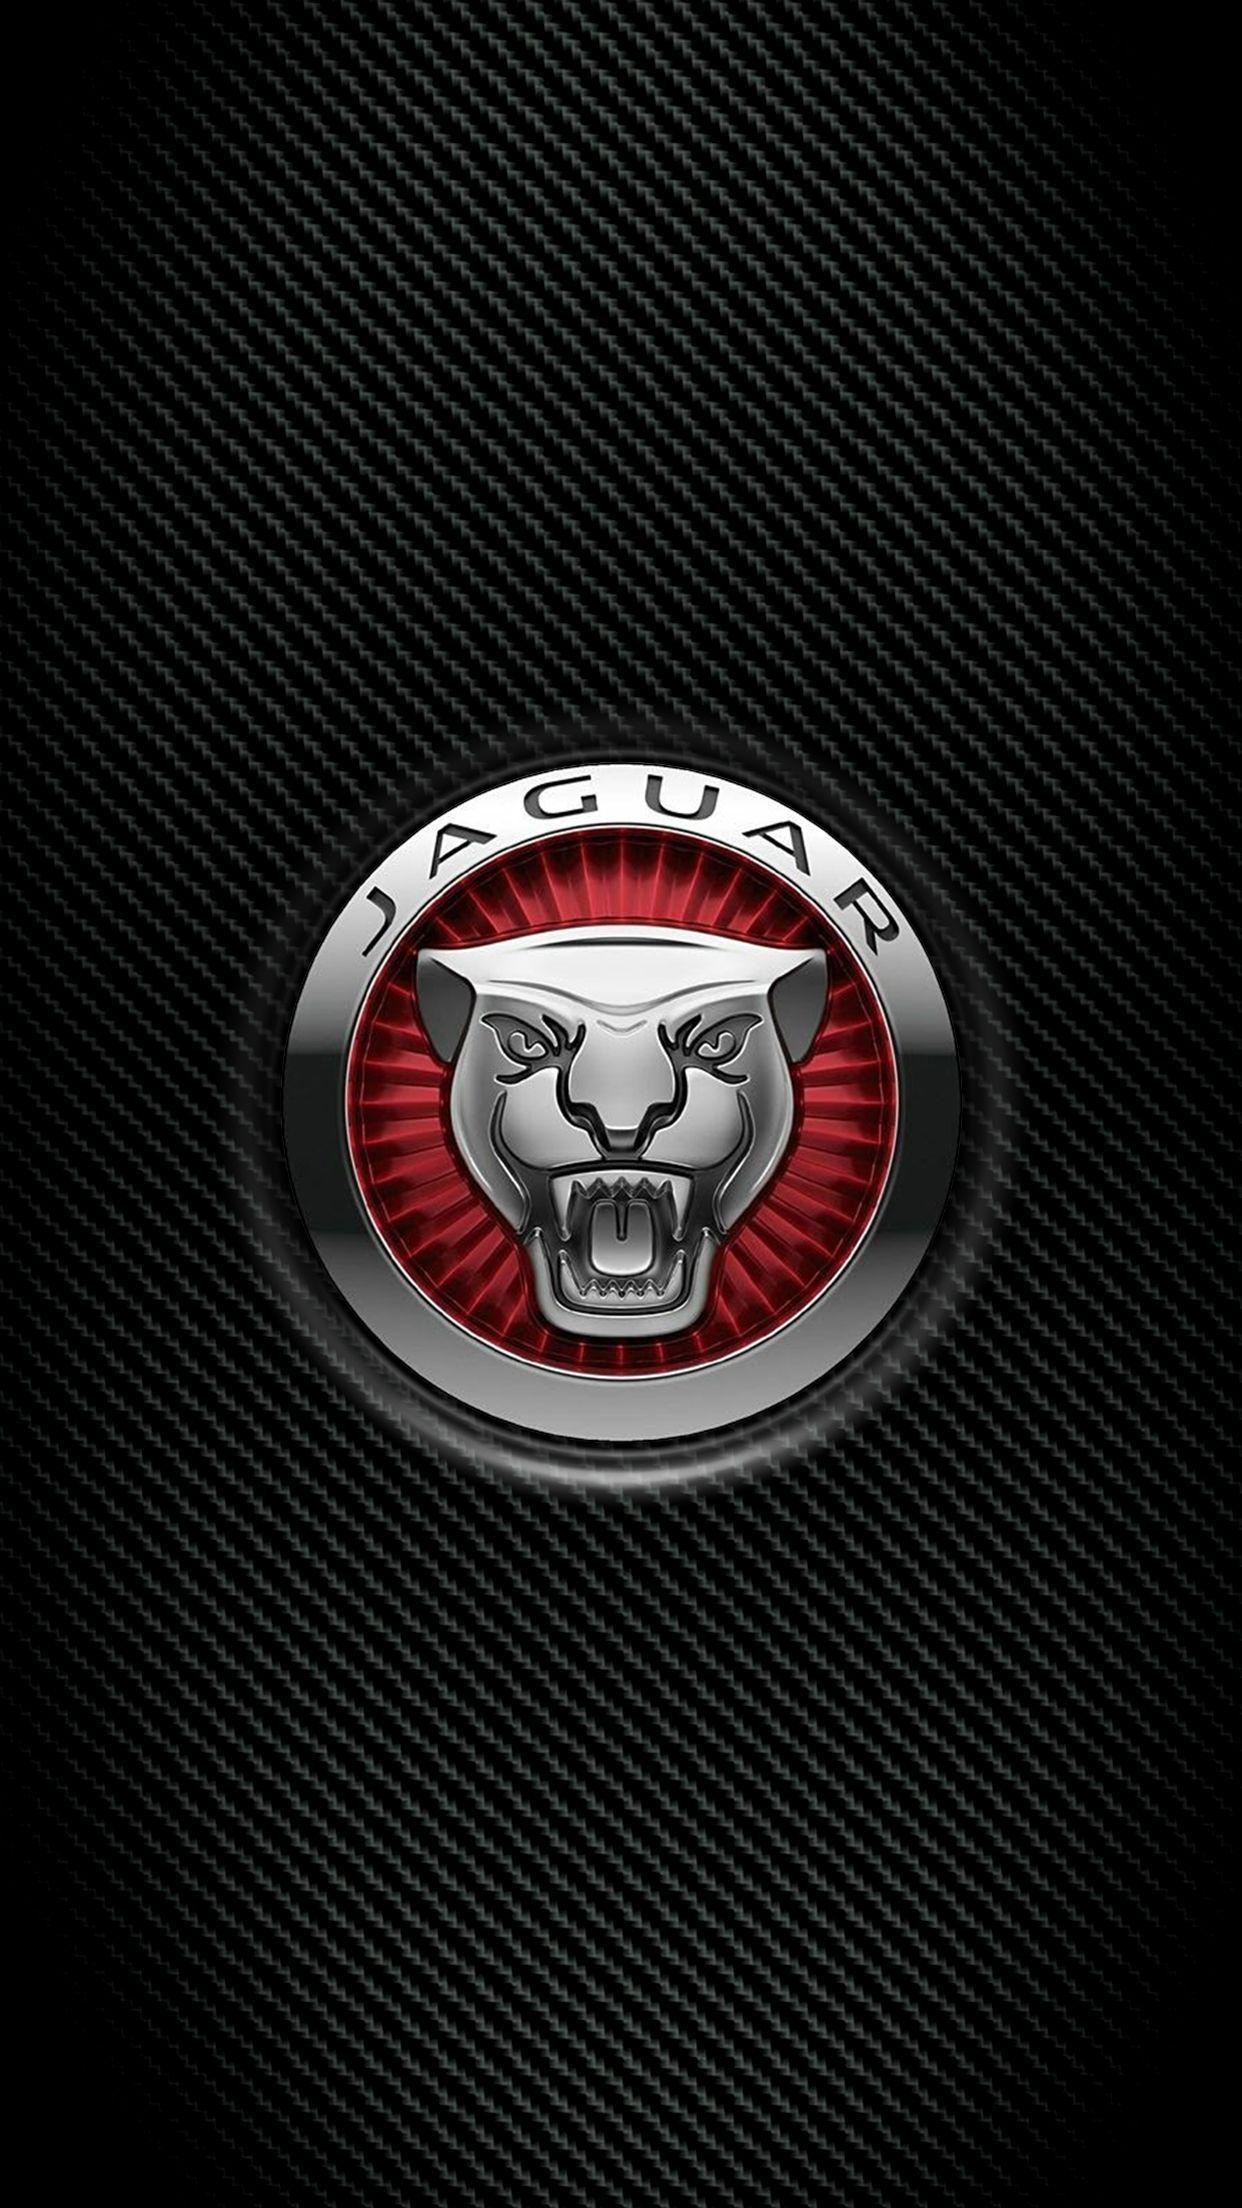 Jaguar Logo Wallpaper Screen Saver For Smartphone. Jaguar Car Logo, New Jaguar Car, Jaguar Car